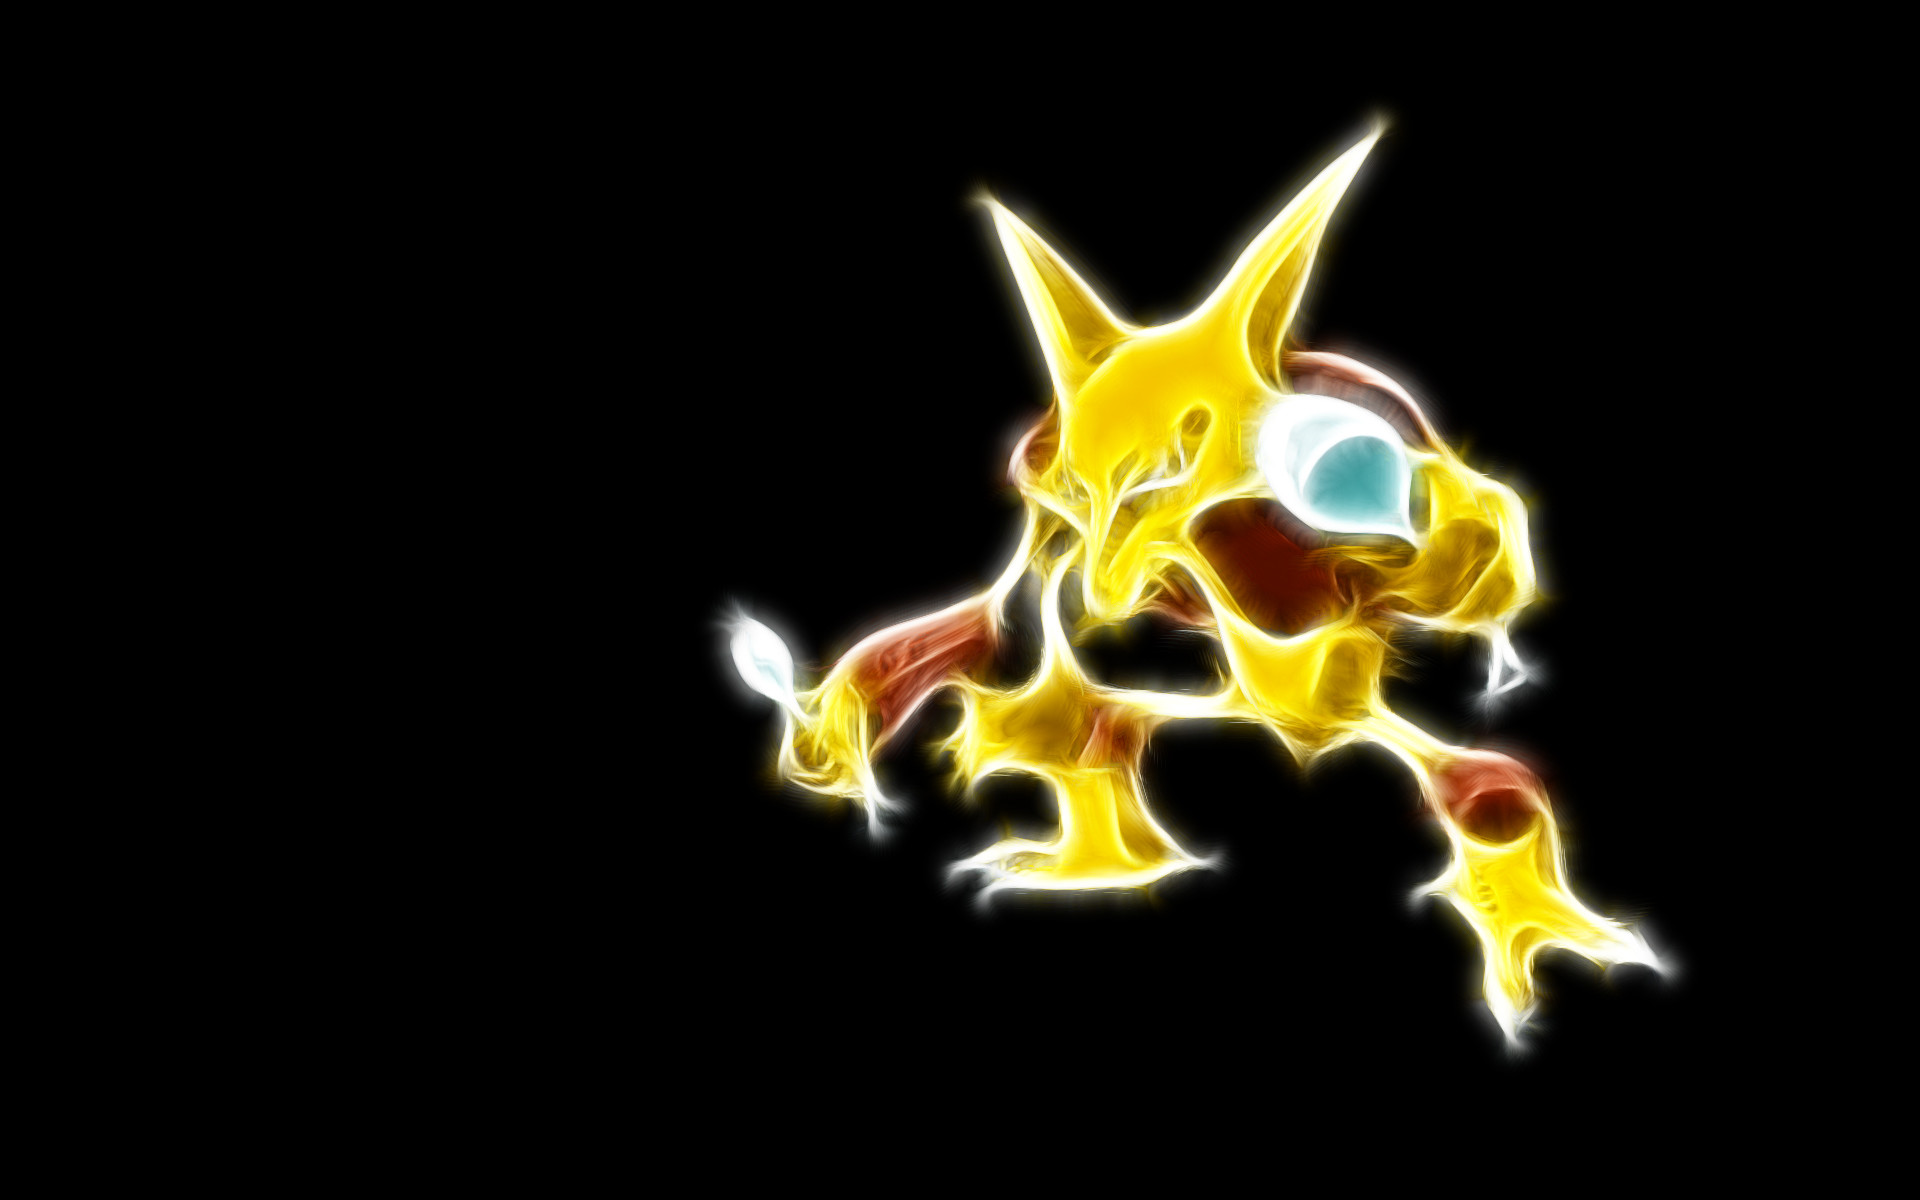 192 Best Pokã©mon Images On Pinterest - Pokemon Wallpaper Alakazam - HD Wallpaper 